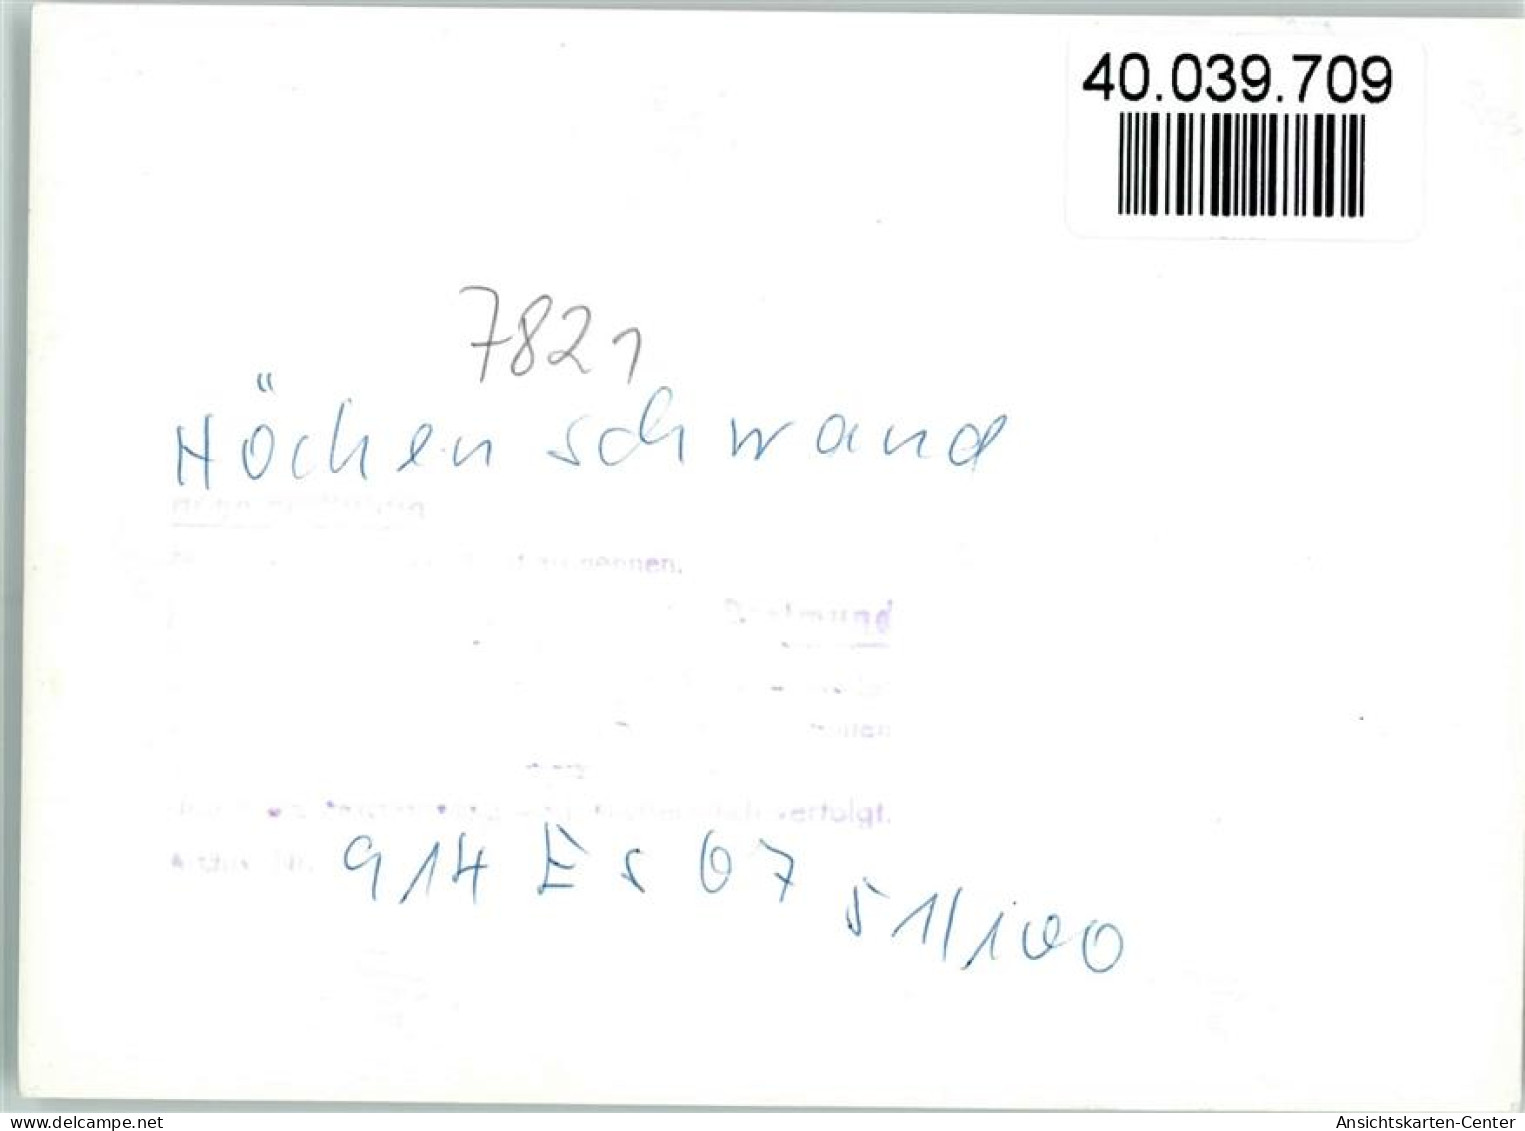 40039709 - Hoechenschwand - Hoechenschwand